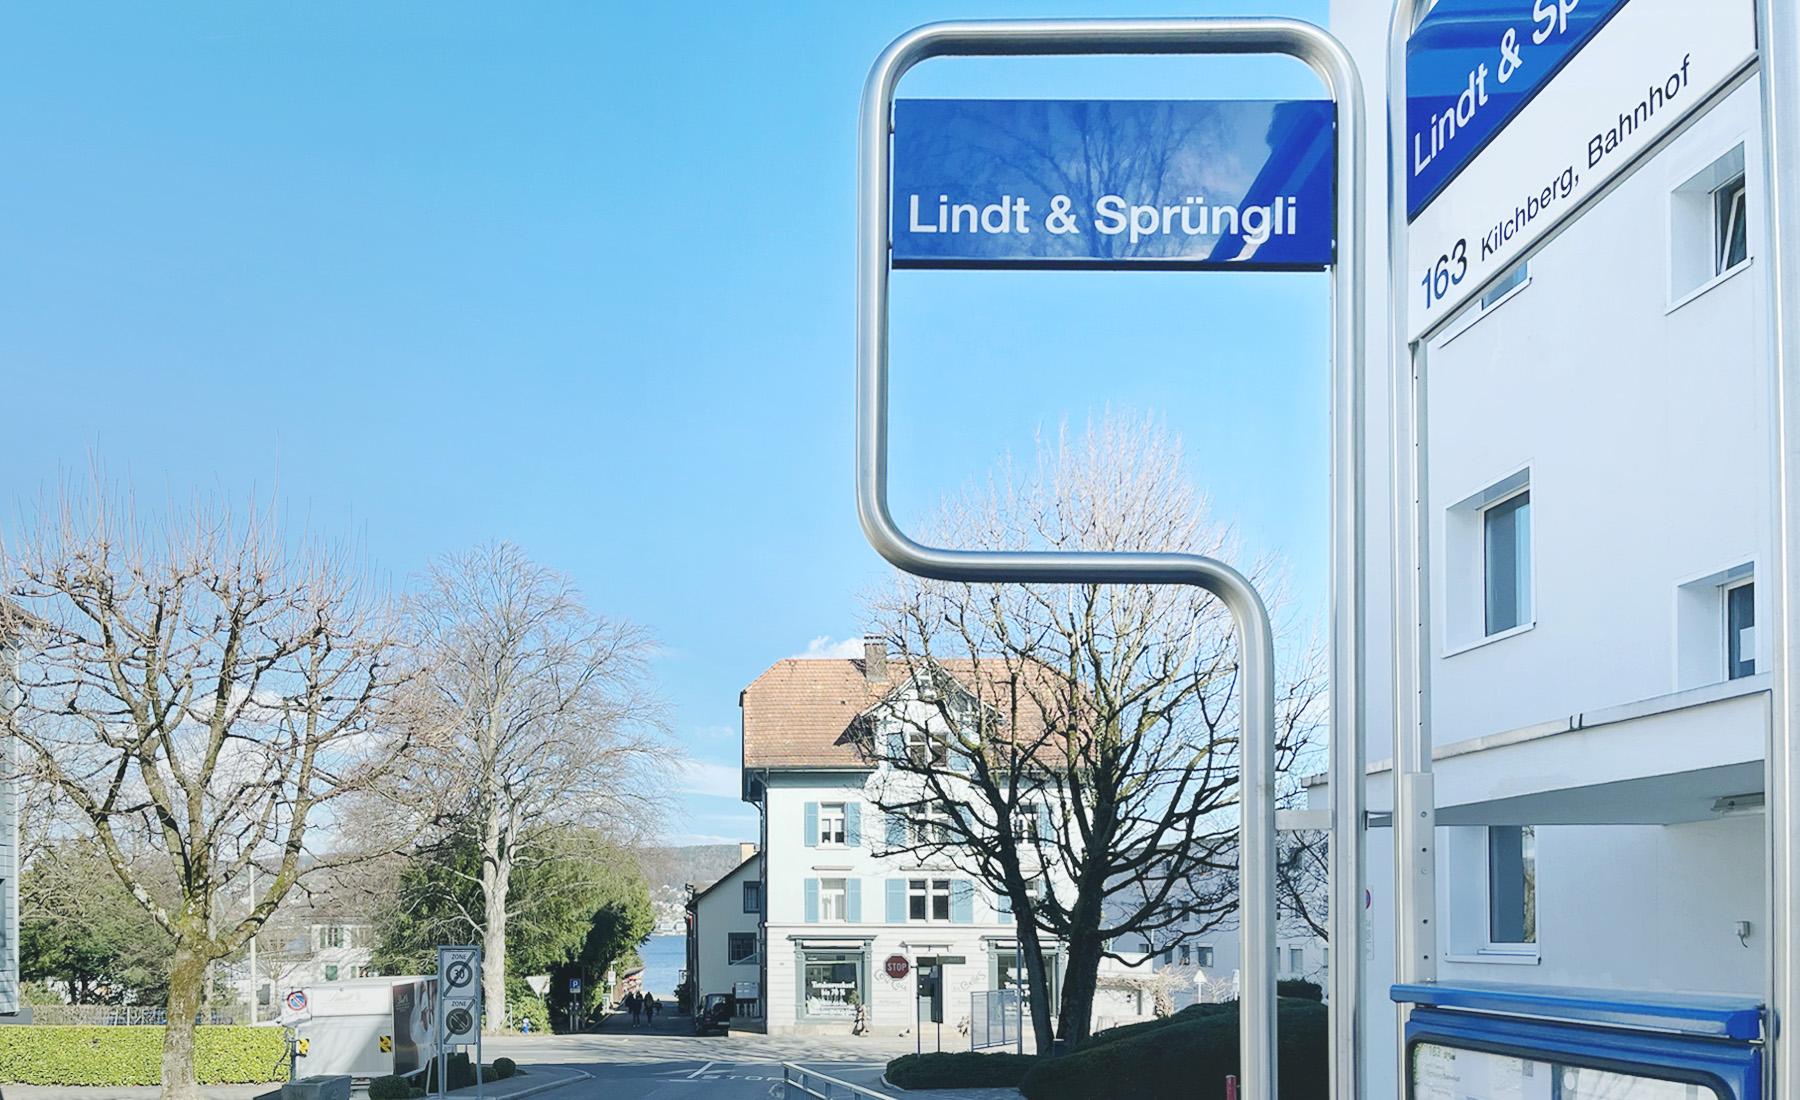 瑞士火車票如何買 – 三月冬季篇 - Lindt & Sprungli 巴士站